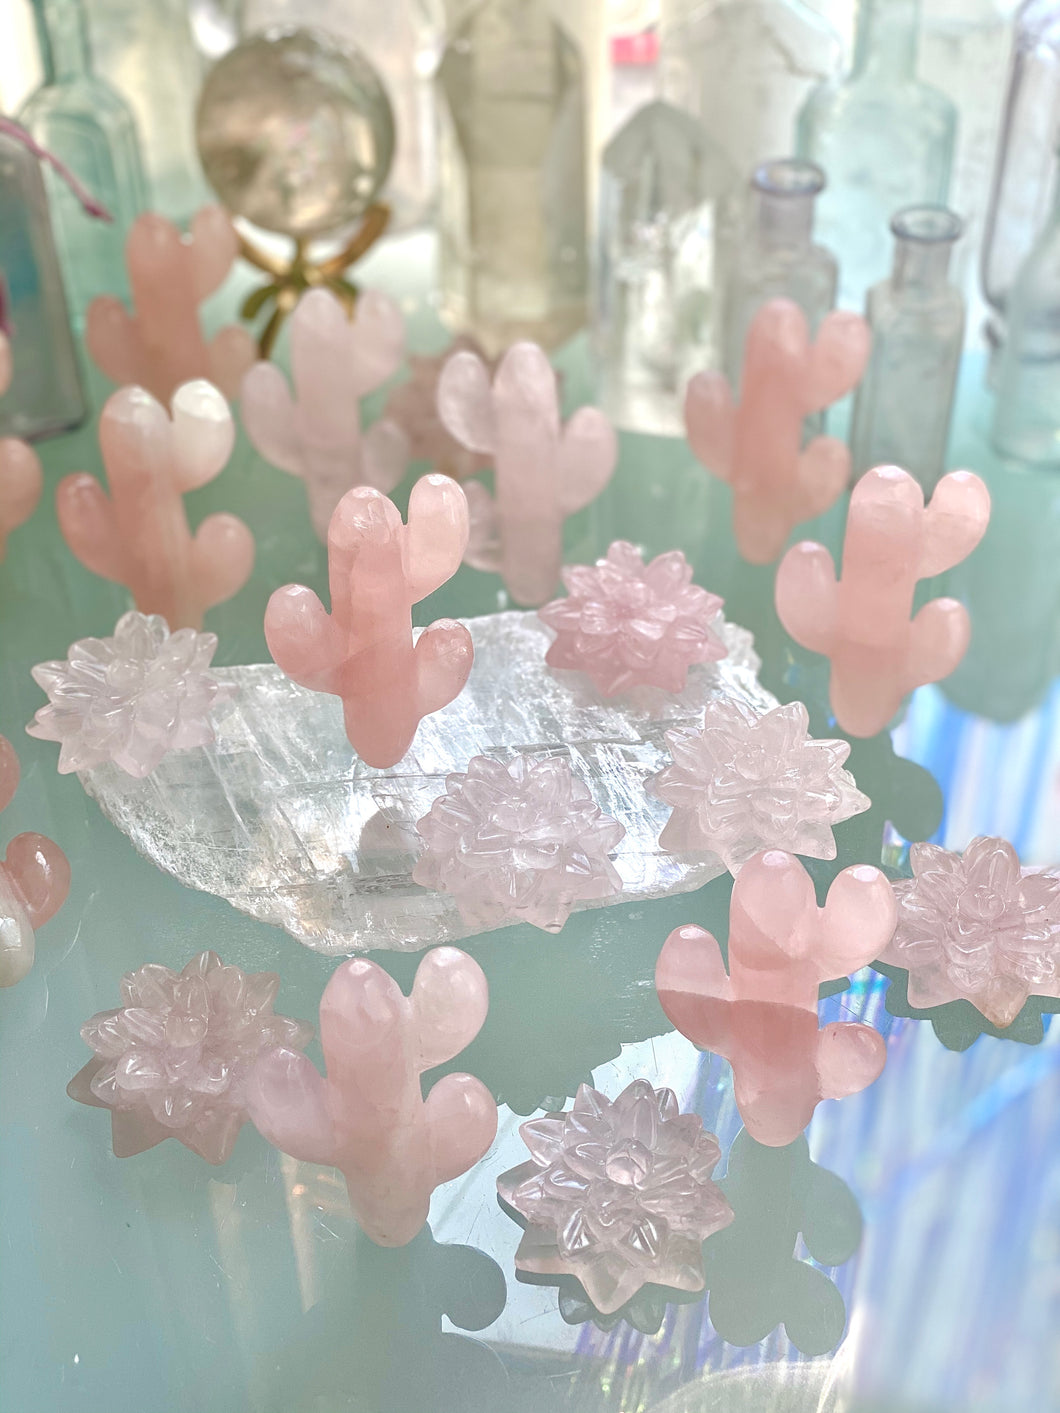 Rose quartz Crystal Cactus